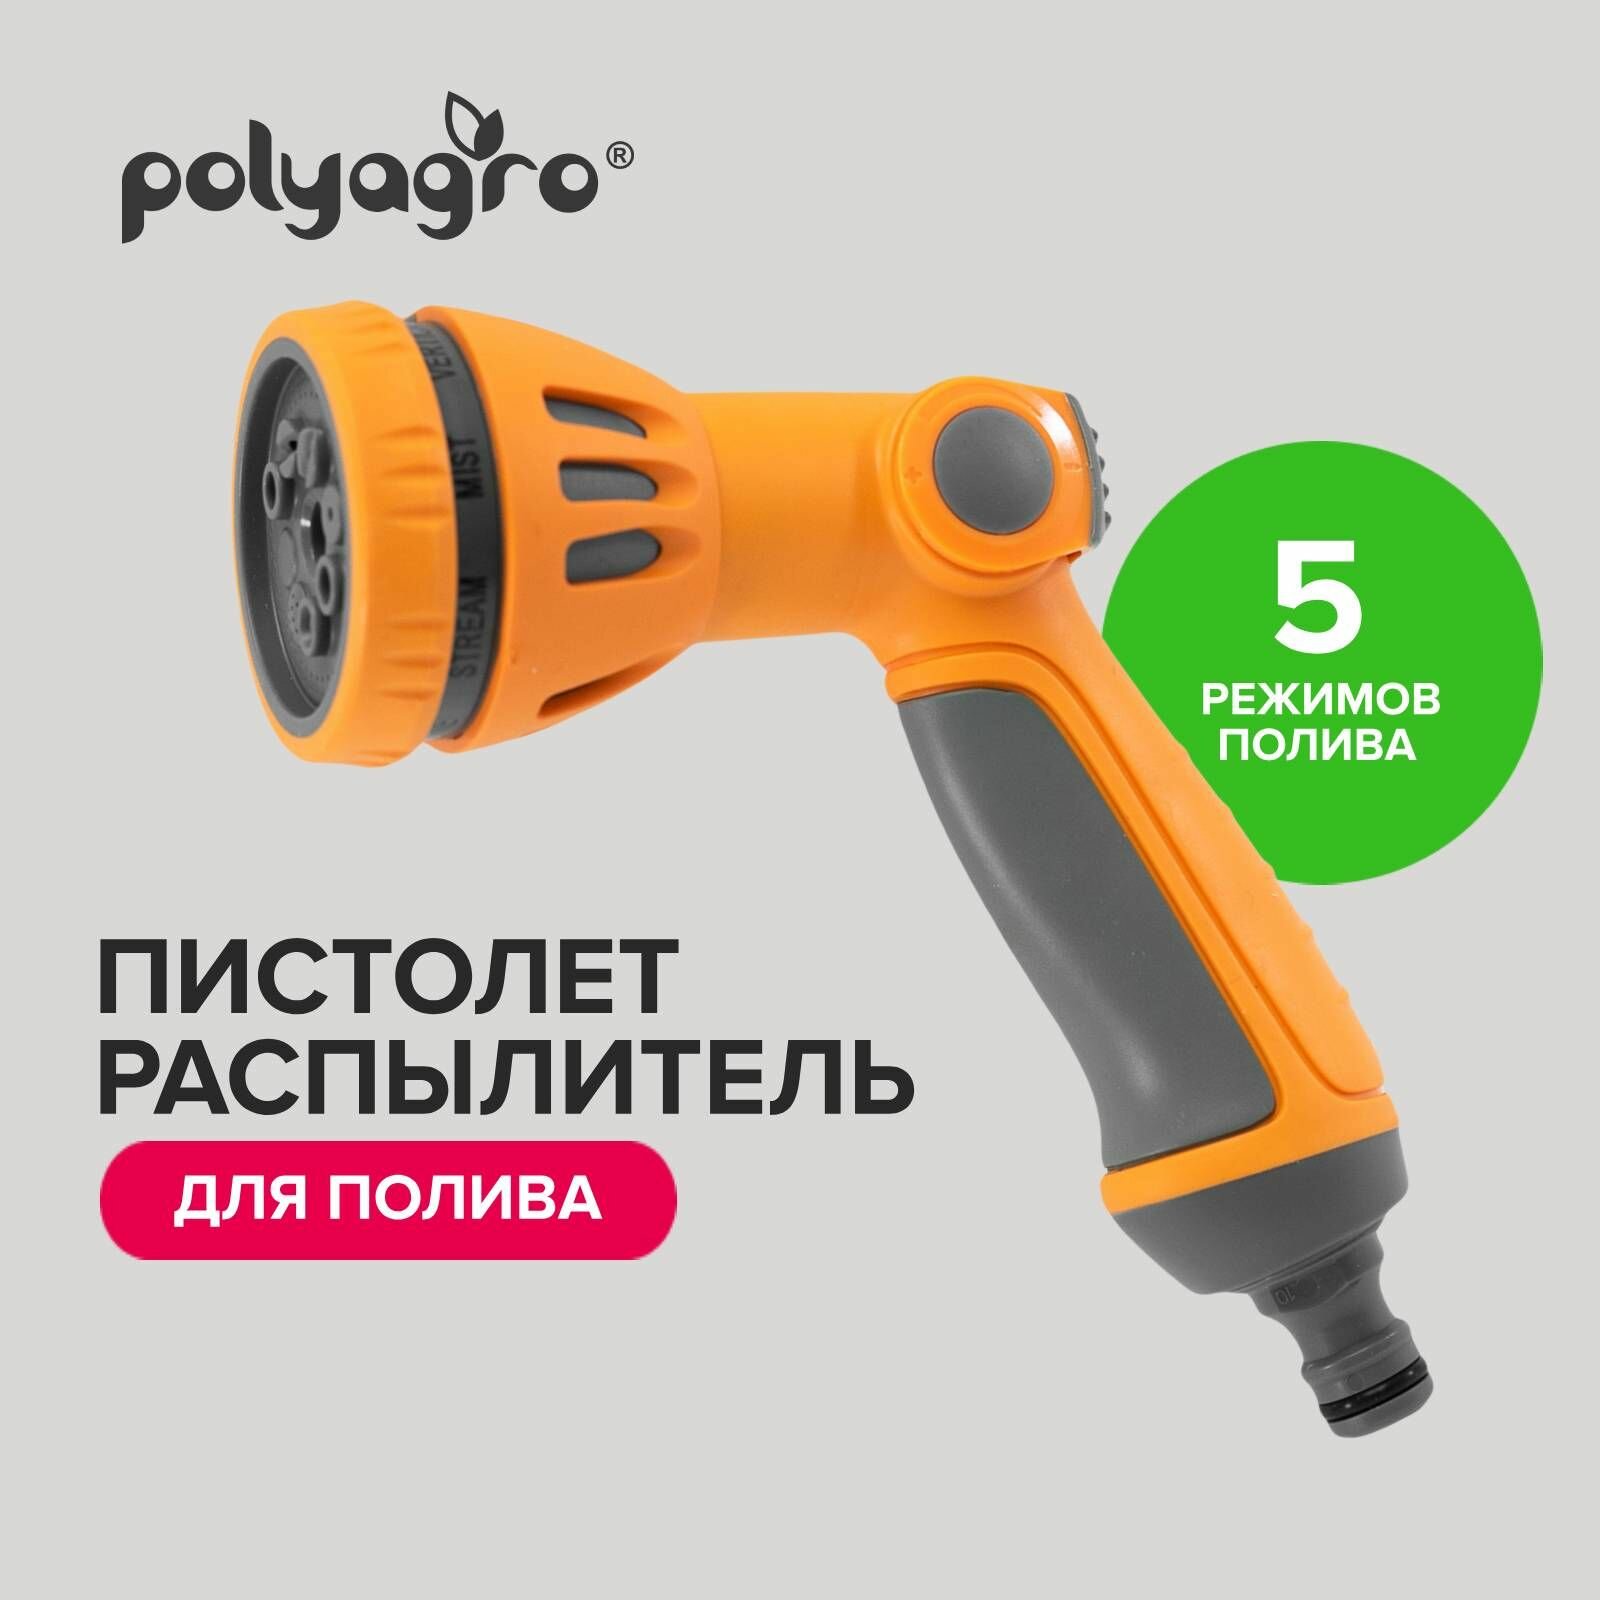 Пистолет распылитель для полива 5 режимов, Polyagro - фотография № 1